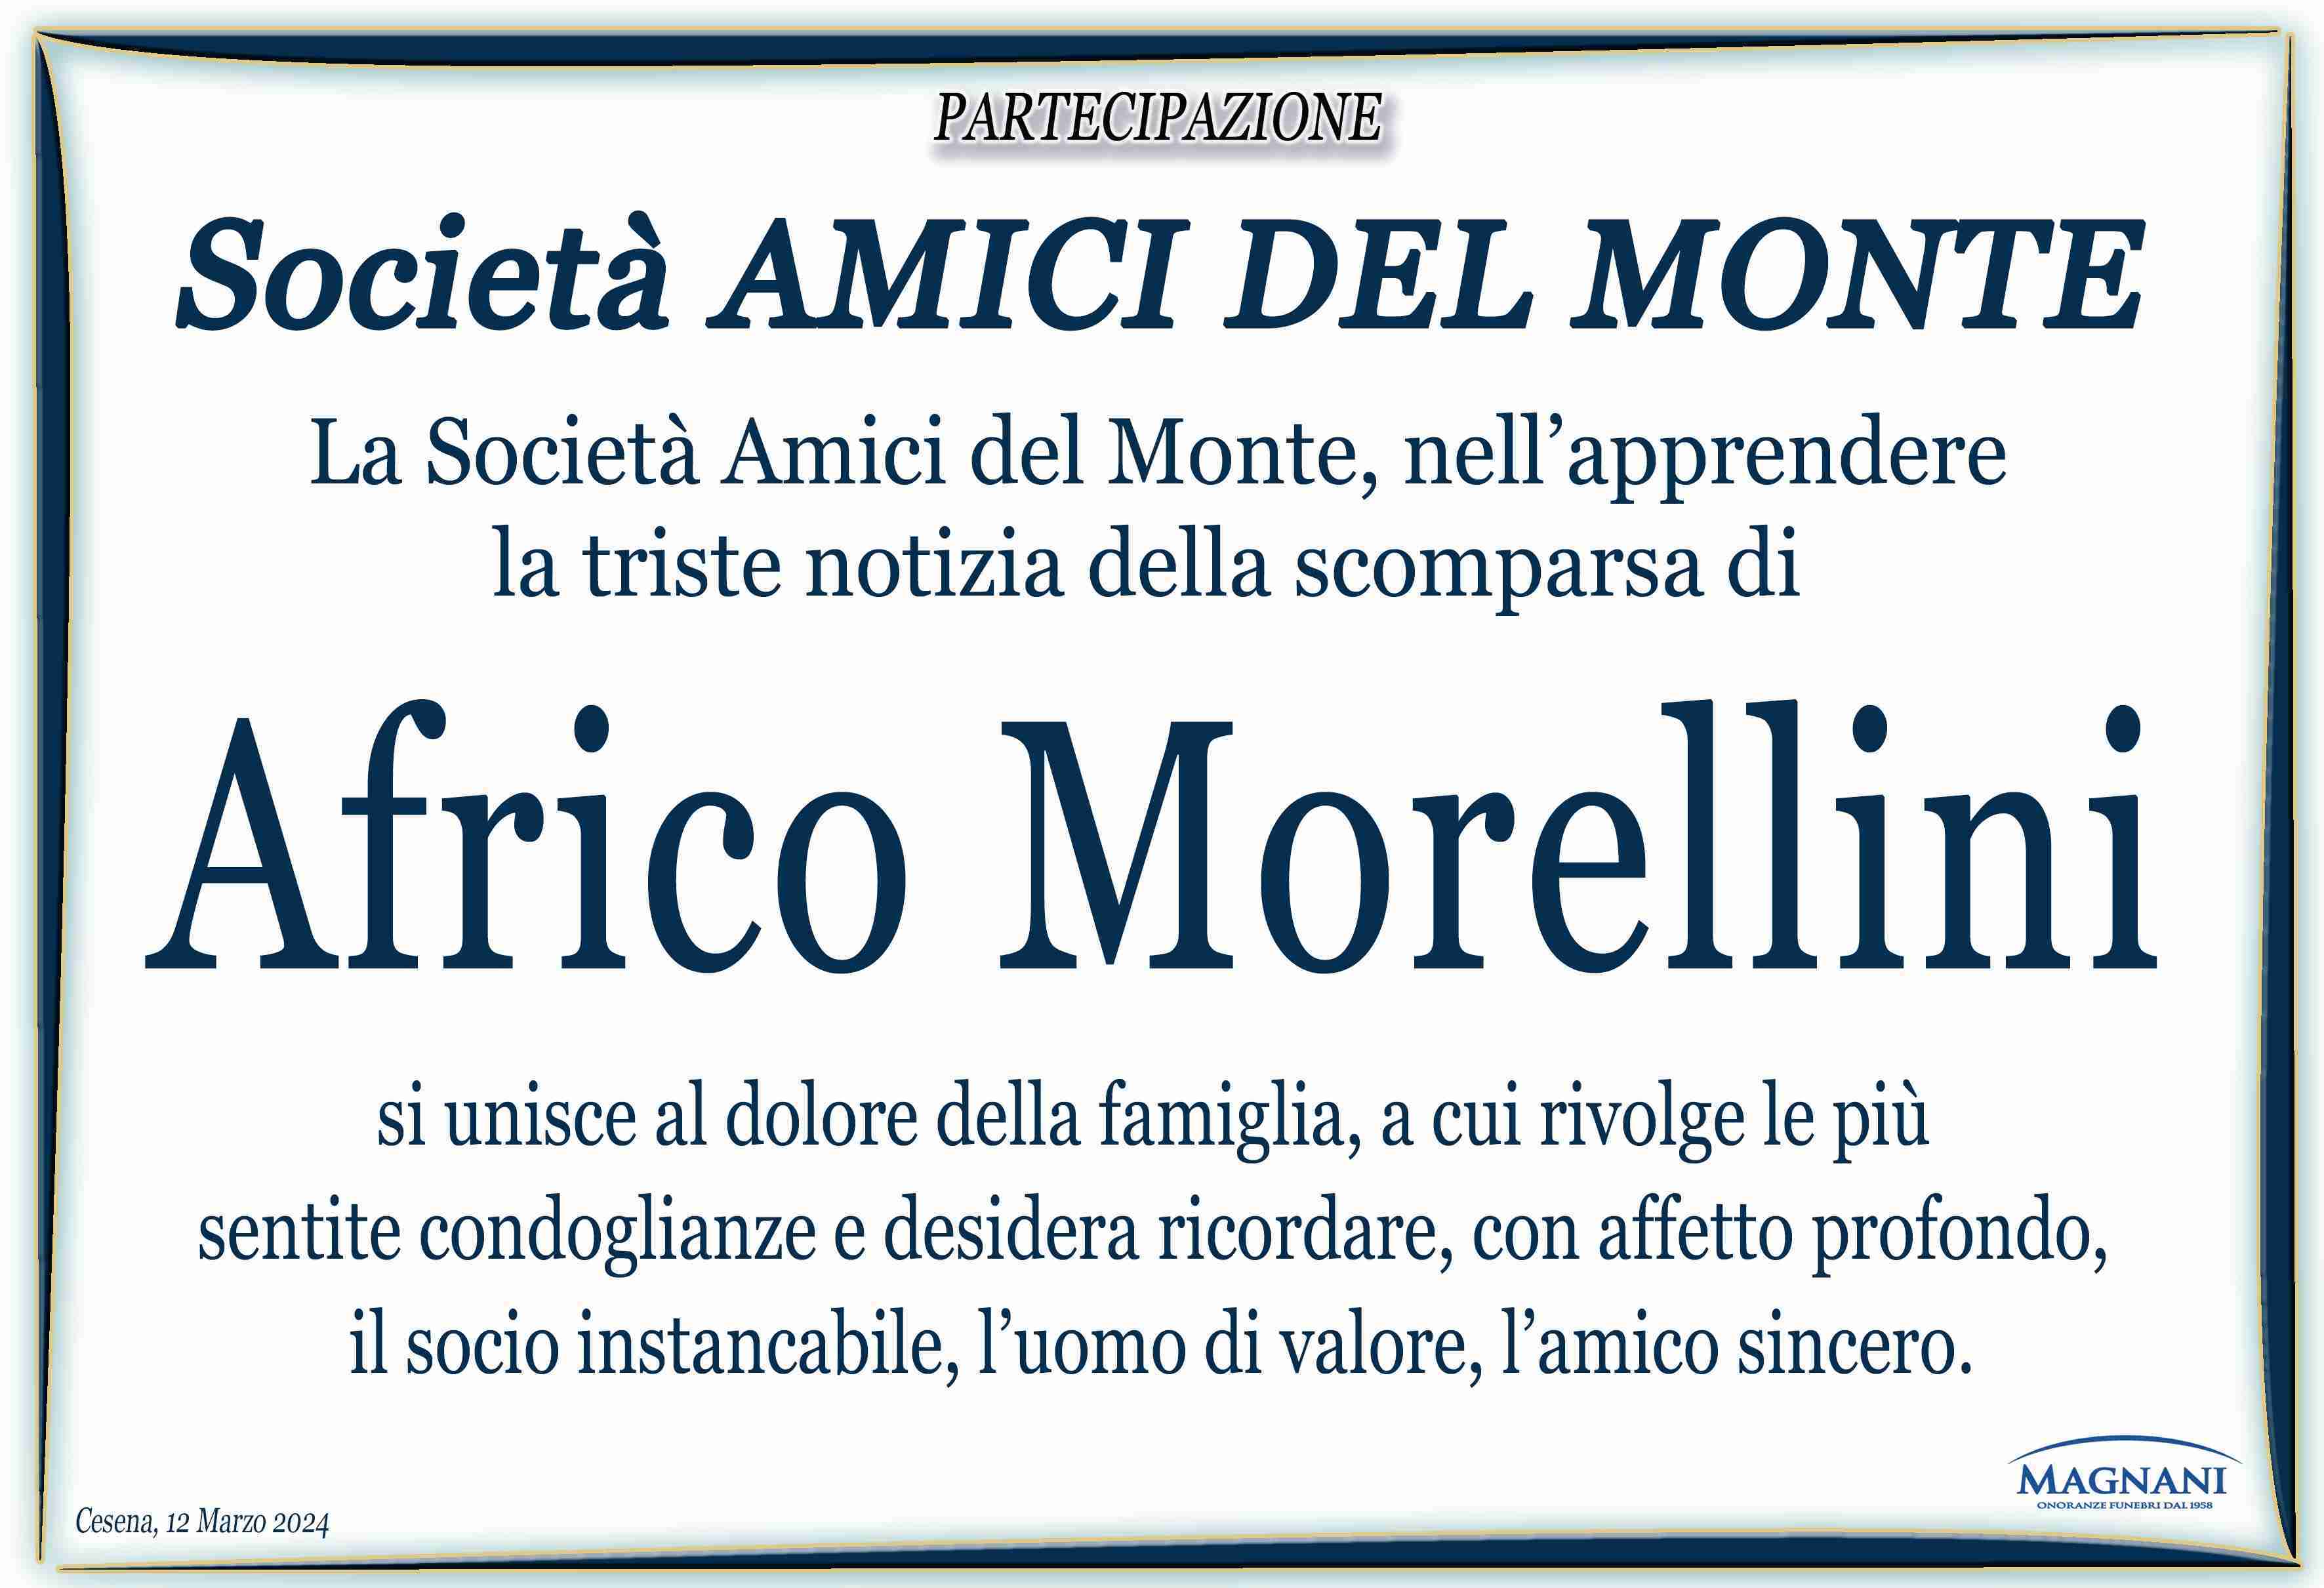 Africo Morellini